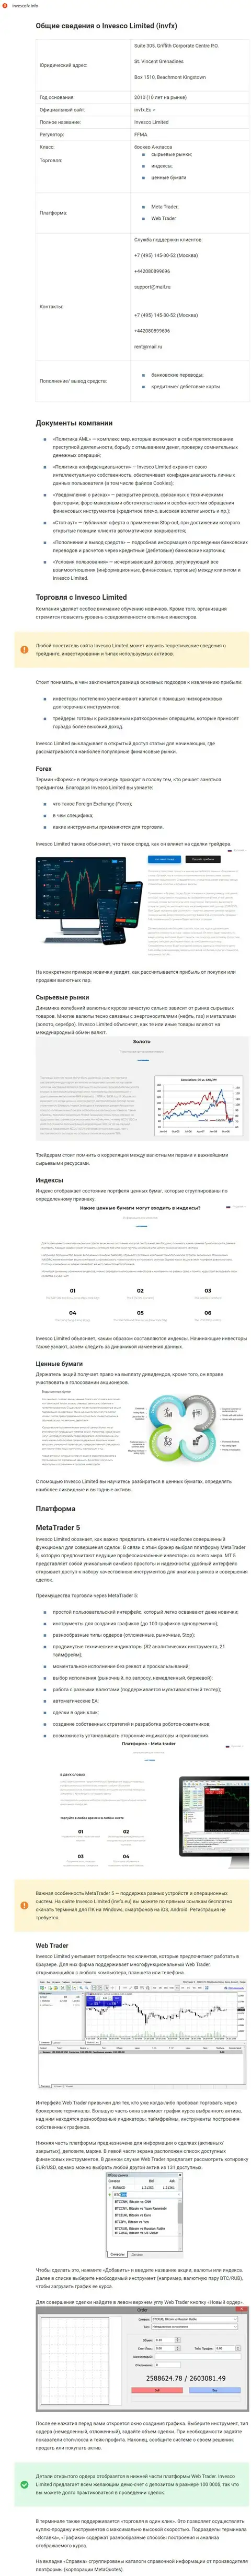 Обзорный материал о ФОРЕКС компании международного значения INVFX на сайте ИнвескоФх Инфо